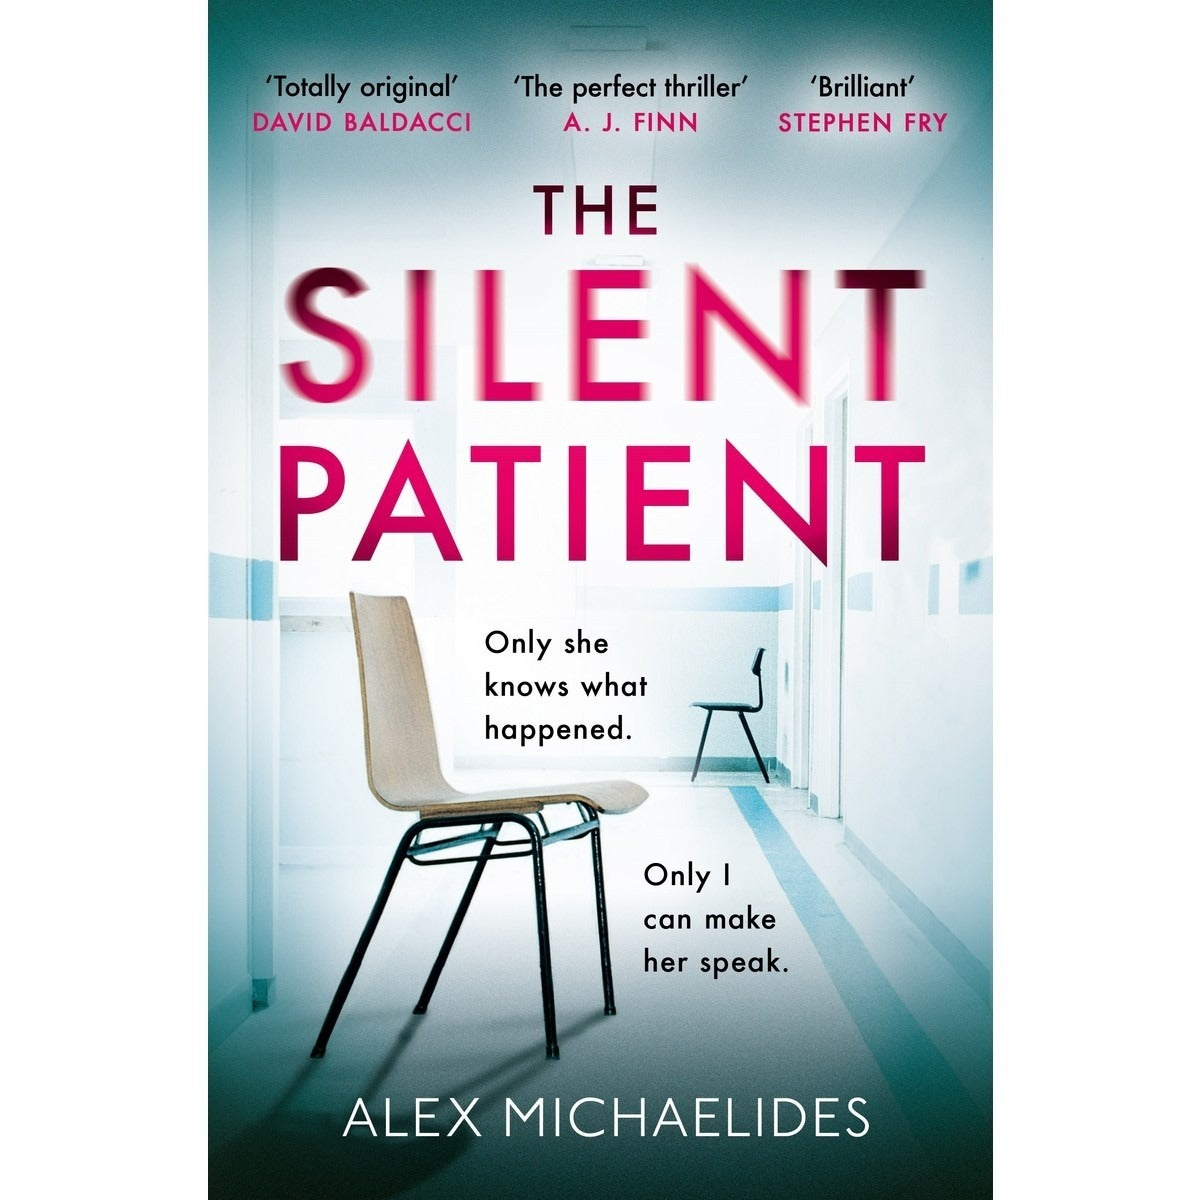 The Silent Patient by Alex Michaelides (book)